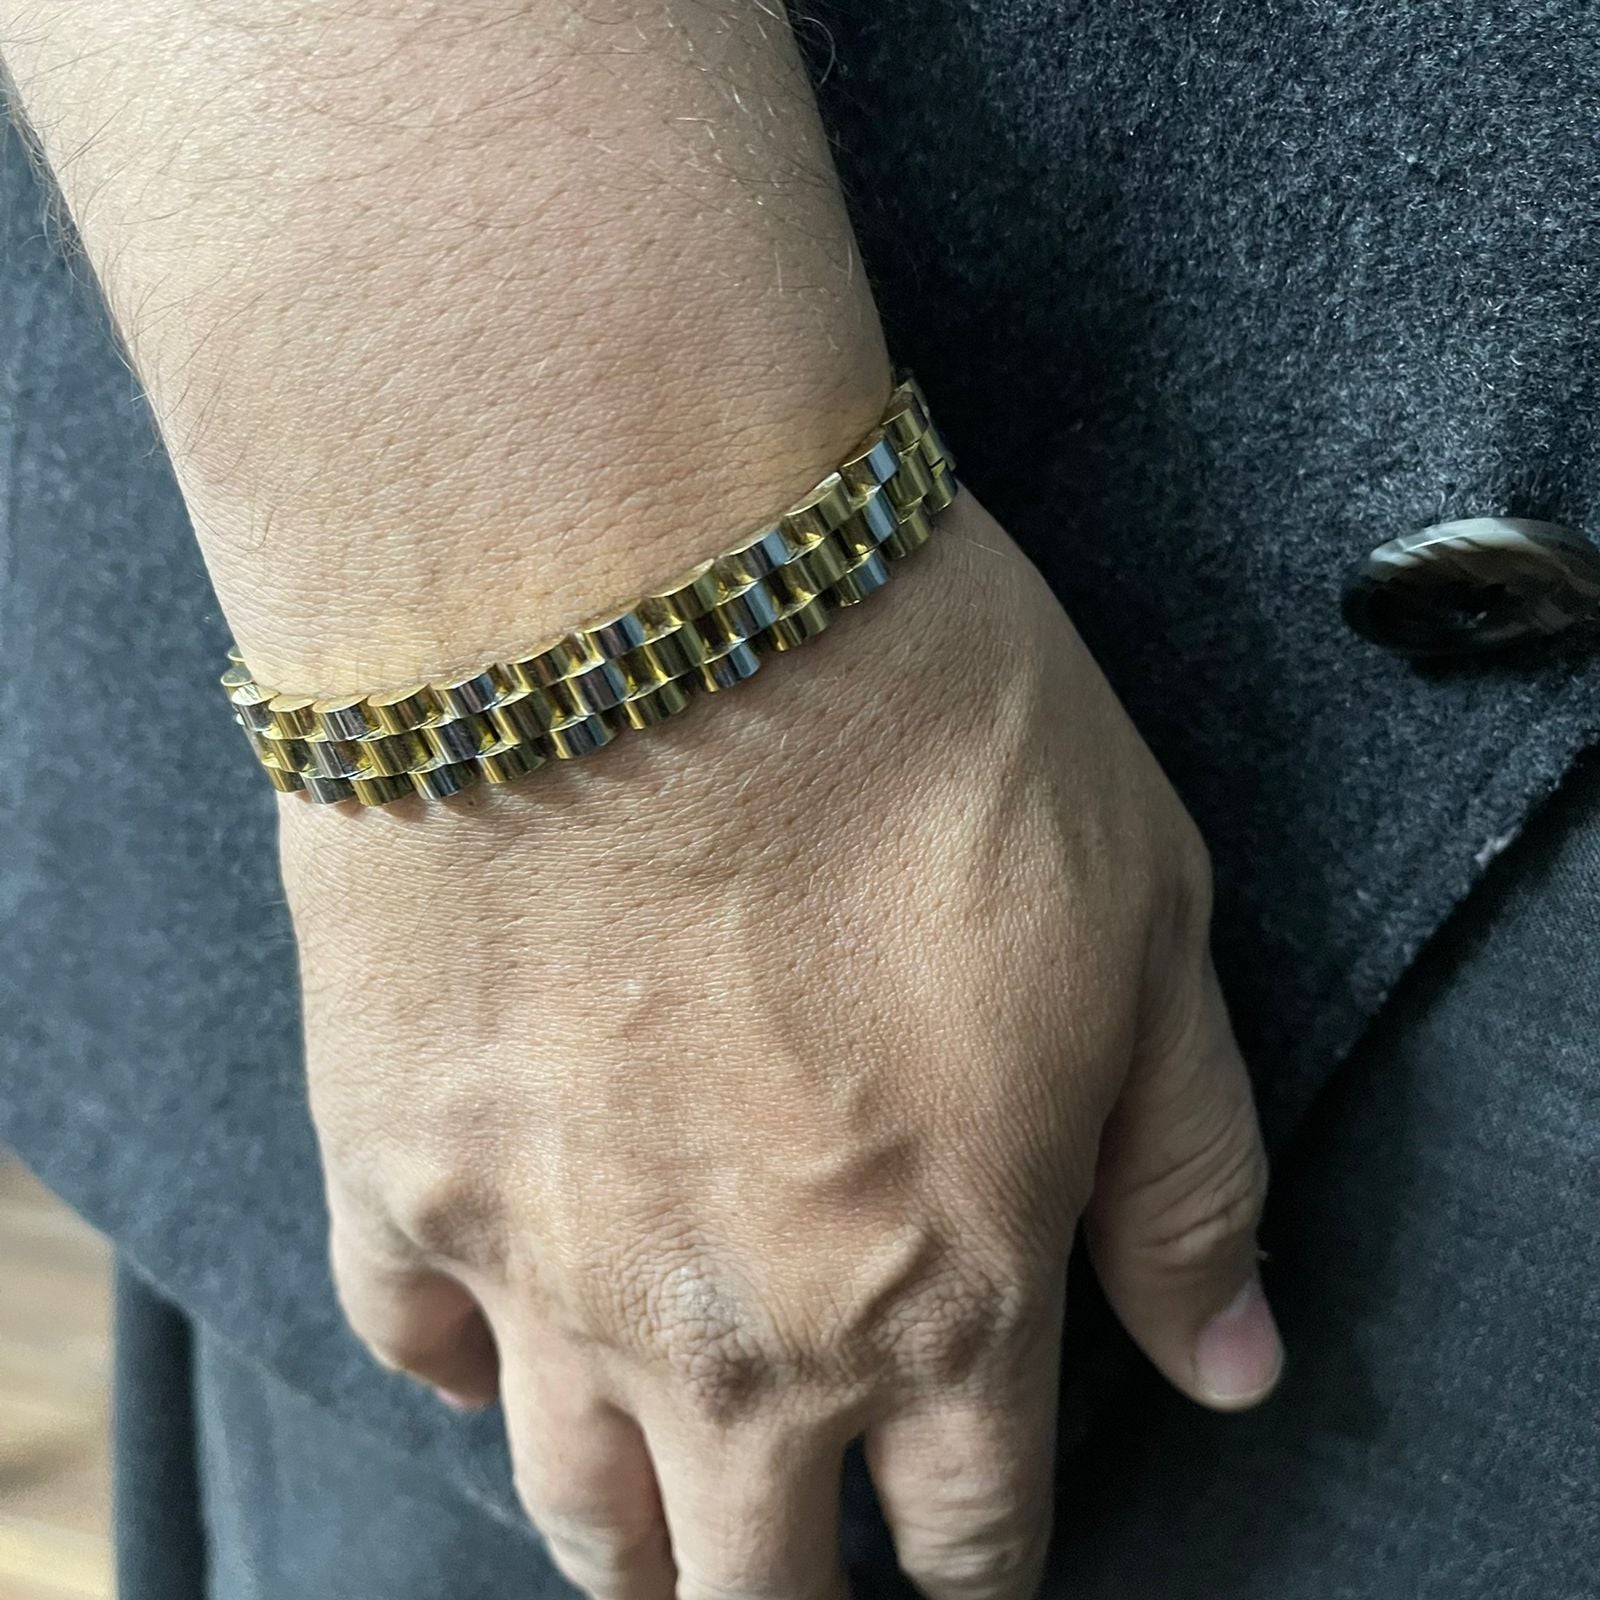 Golden Silver Rolex jubilee Bracelet for men Online In Pakistan